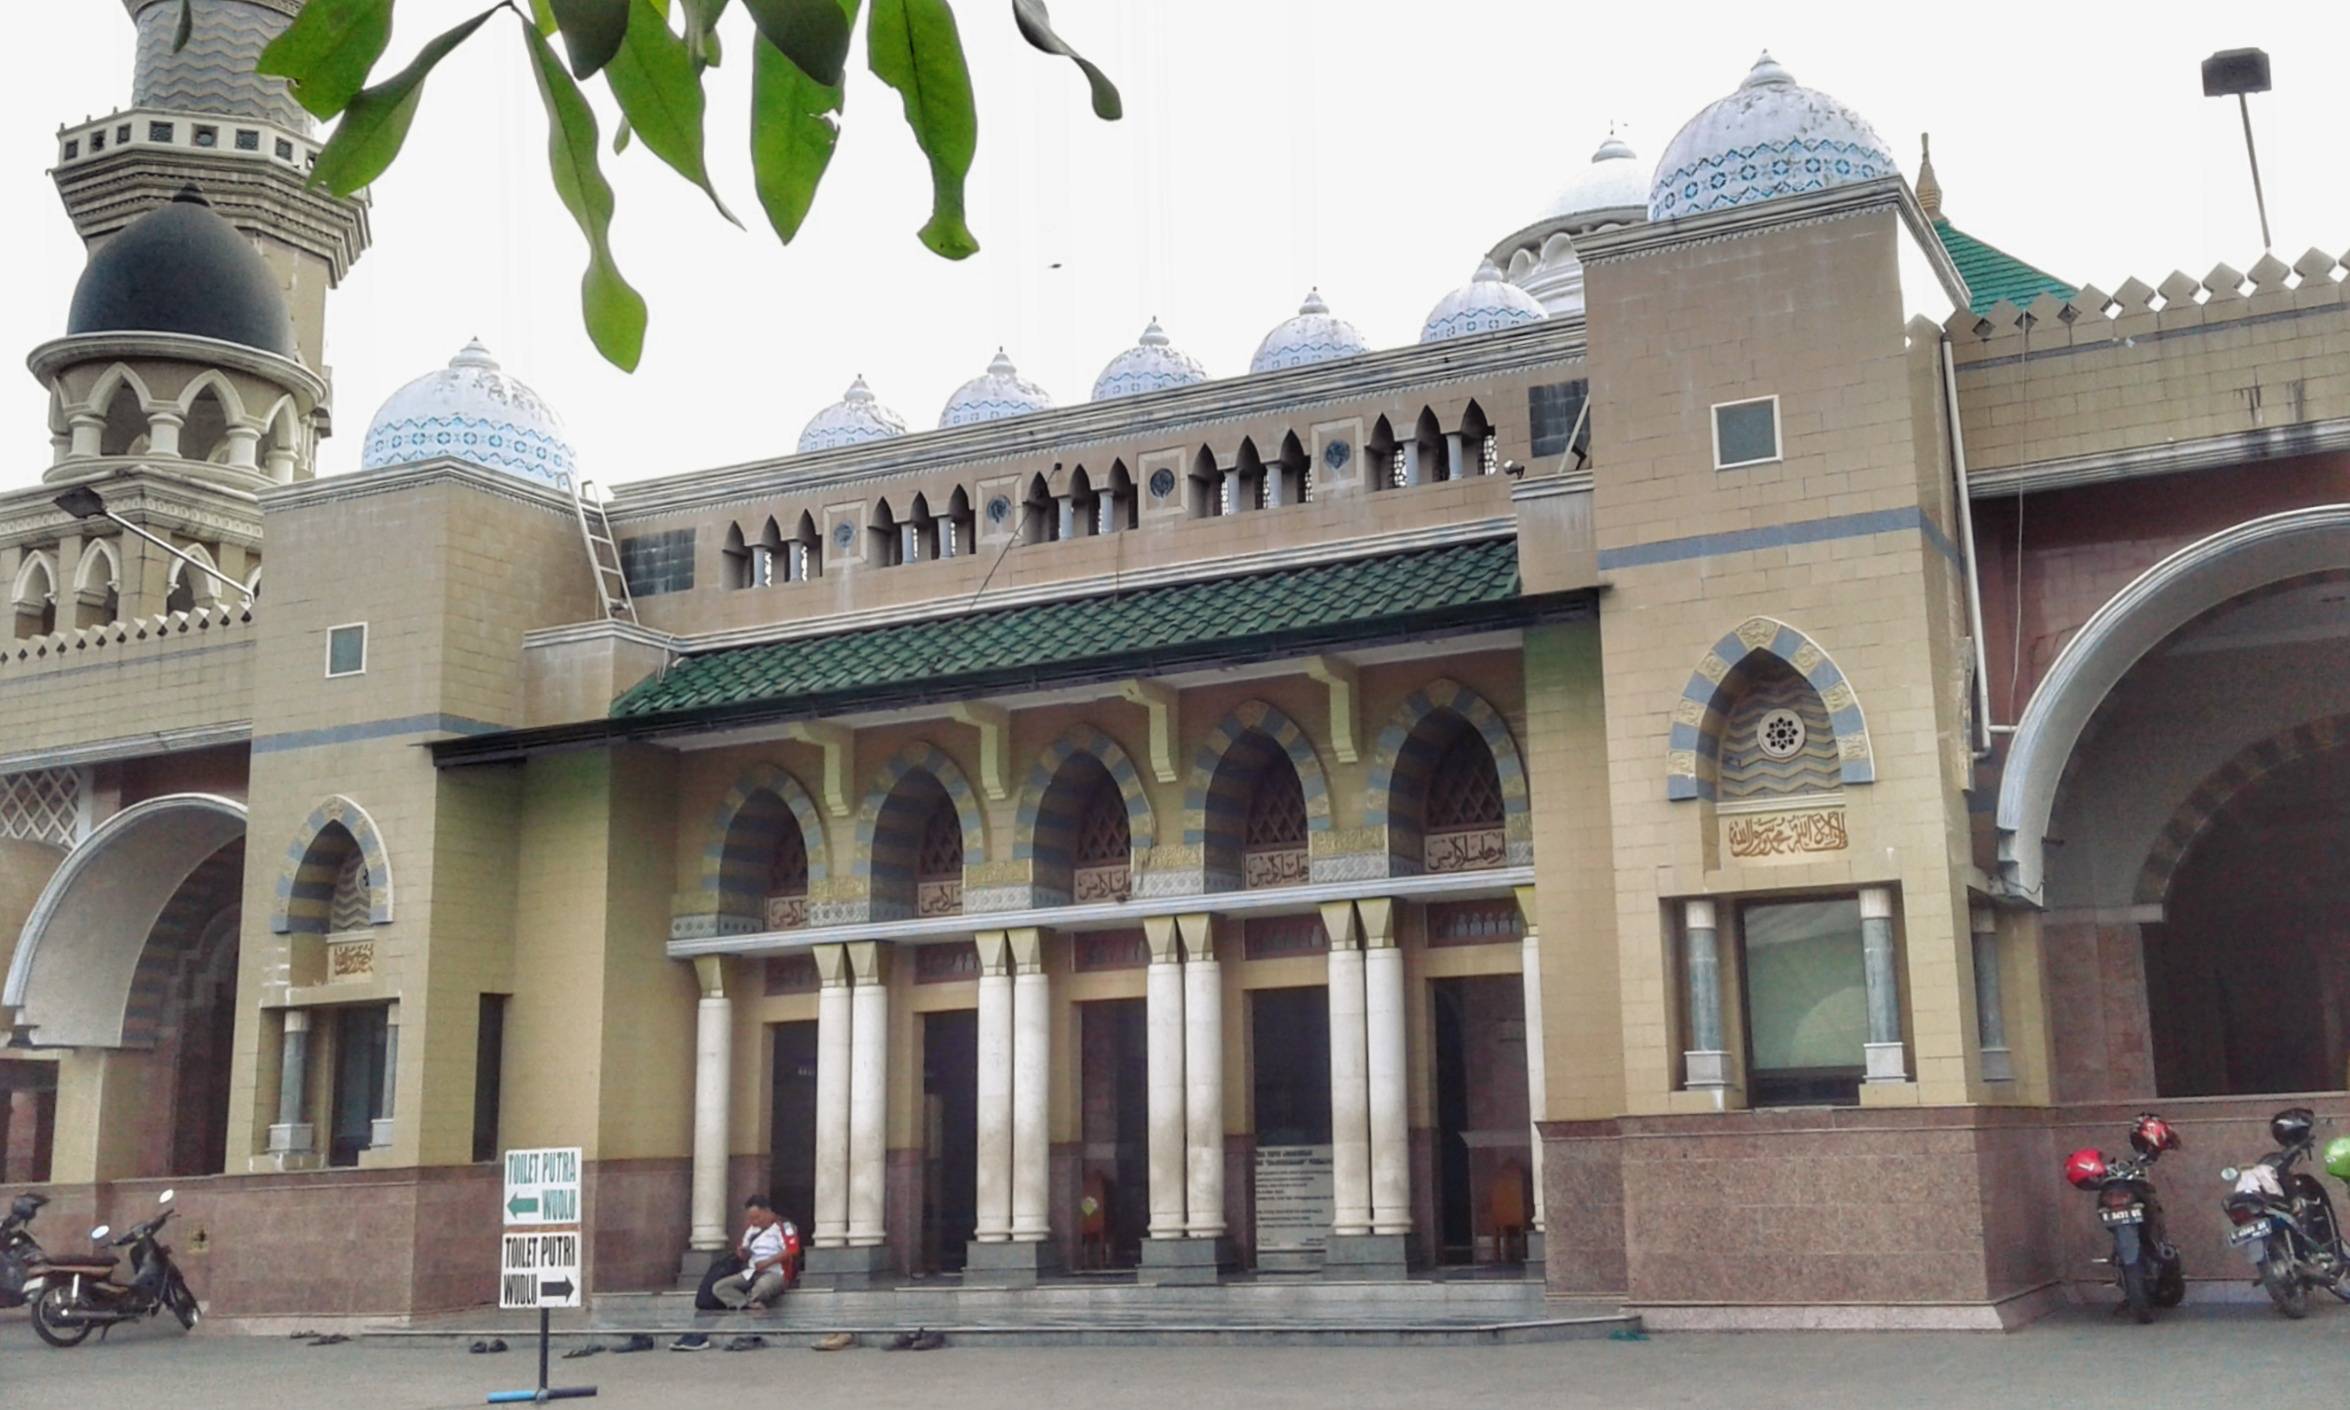 Masjid saat Dilihat dari Luar (c) Eva Oktaviasari/Travelingyuk